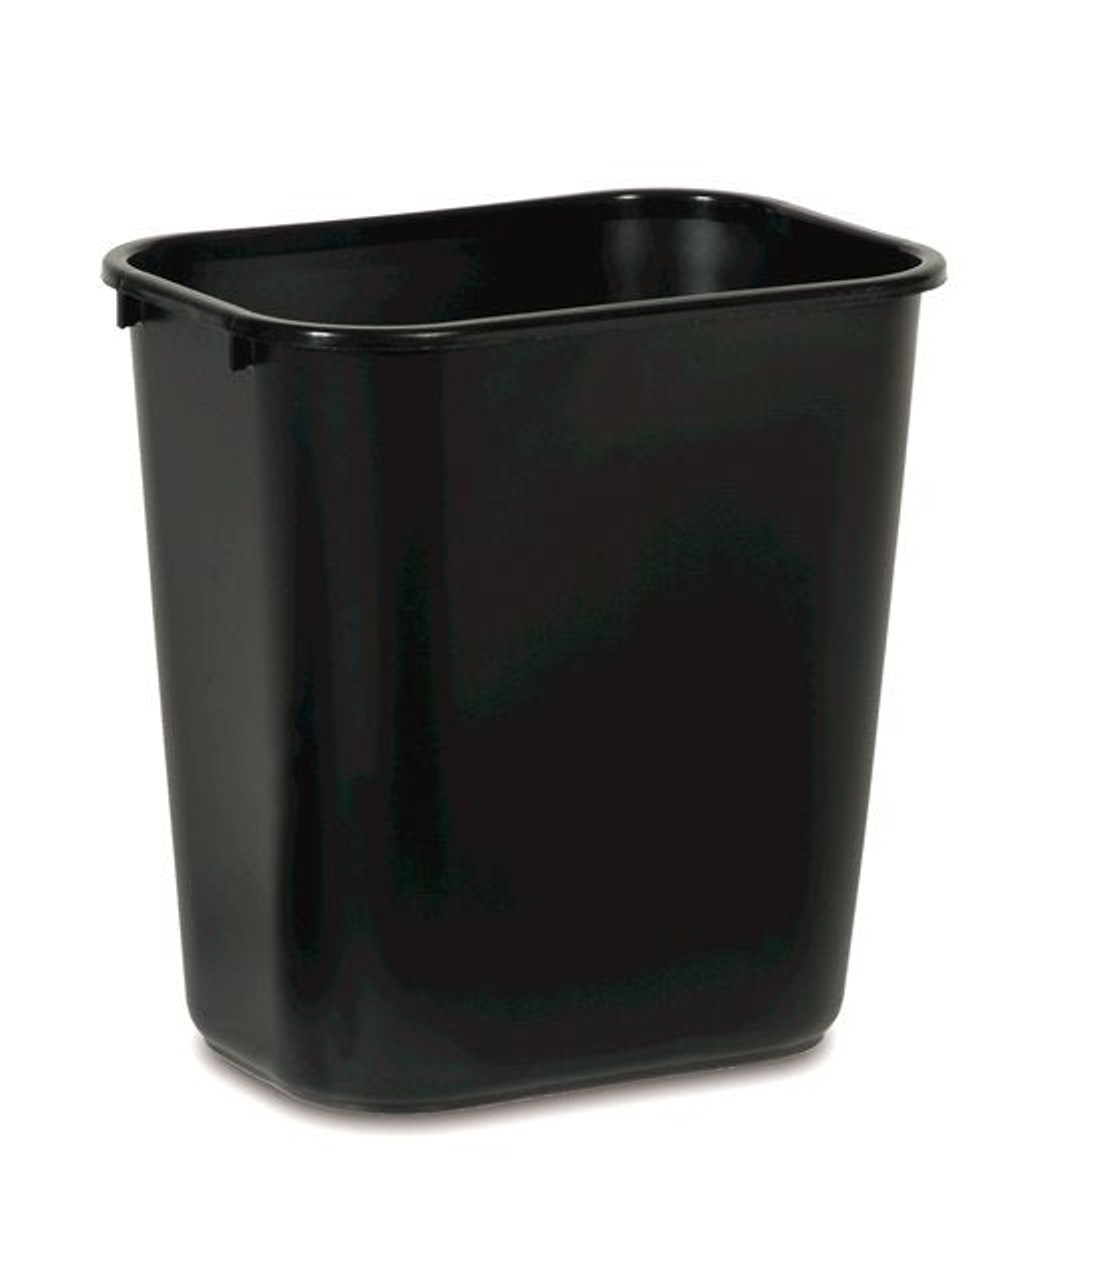 Rubbermaid Commercial 26.6L Black Rectangular Deskside Waste Container | 1UN/Unit, 1 Unit/Case